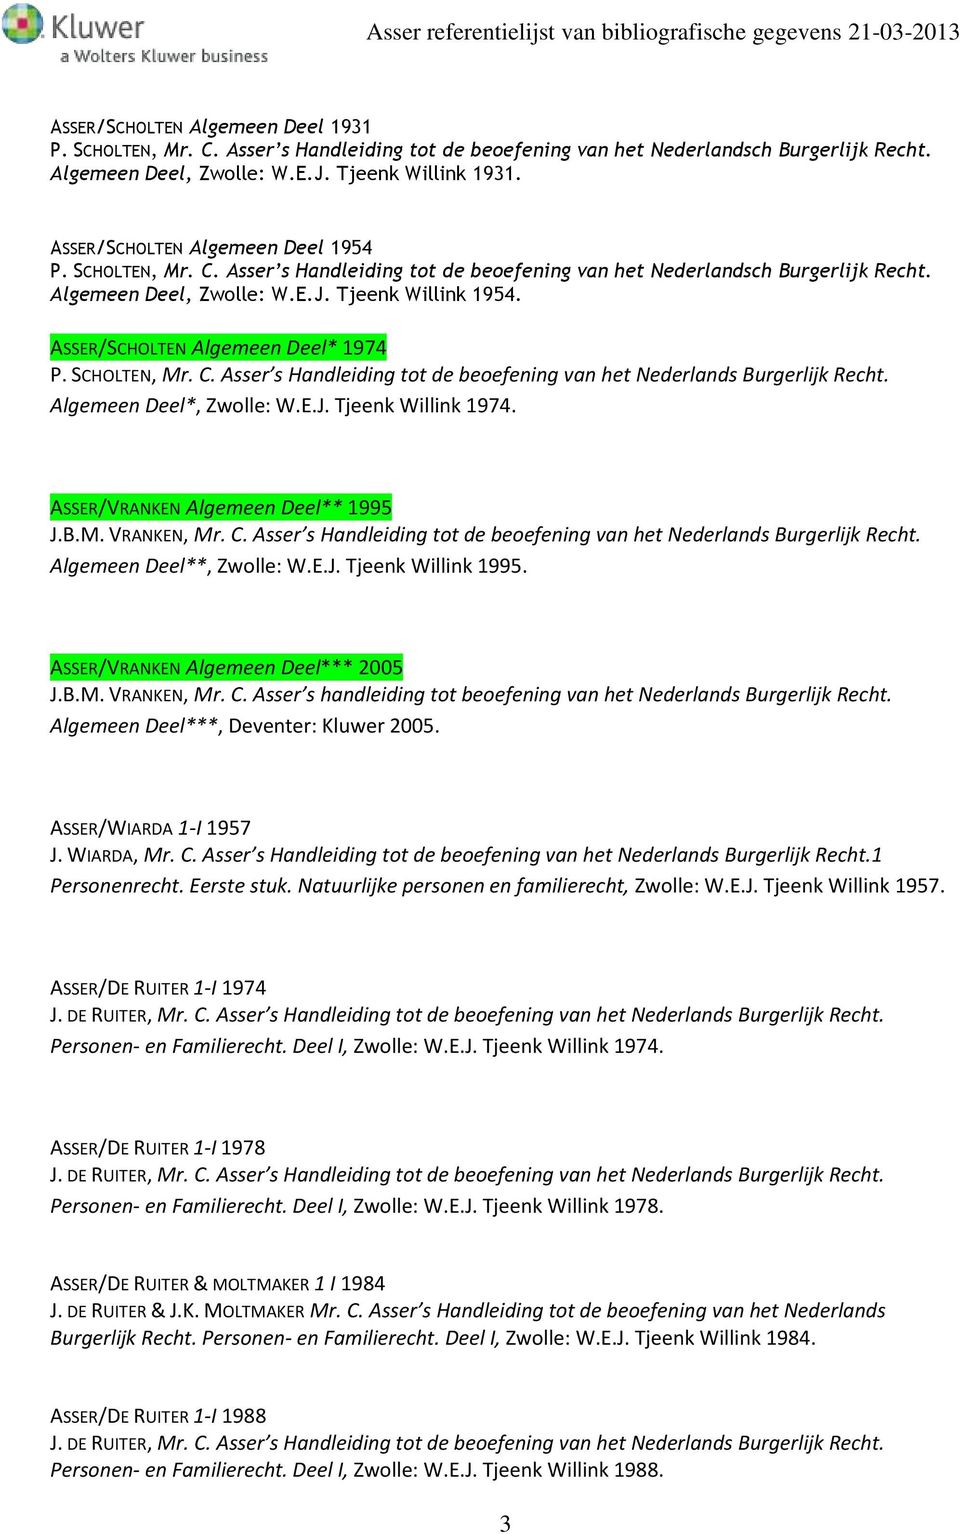 ASSER/SCHOLTEN Algemeen Deel* 1974 P. SCHOLTEN, Mr. C. Asser s Handleiding tot de beoefening van het Nederlands Burgerlijk Recht. Algemeen Deel*, Zwolle: W.E.J. Tjeenk Willink 1974.